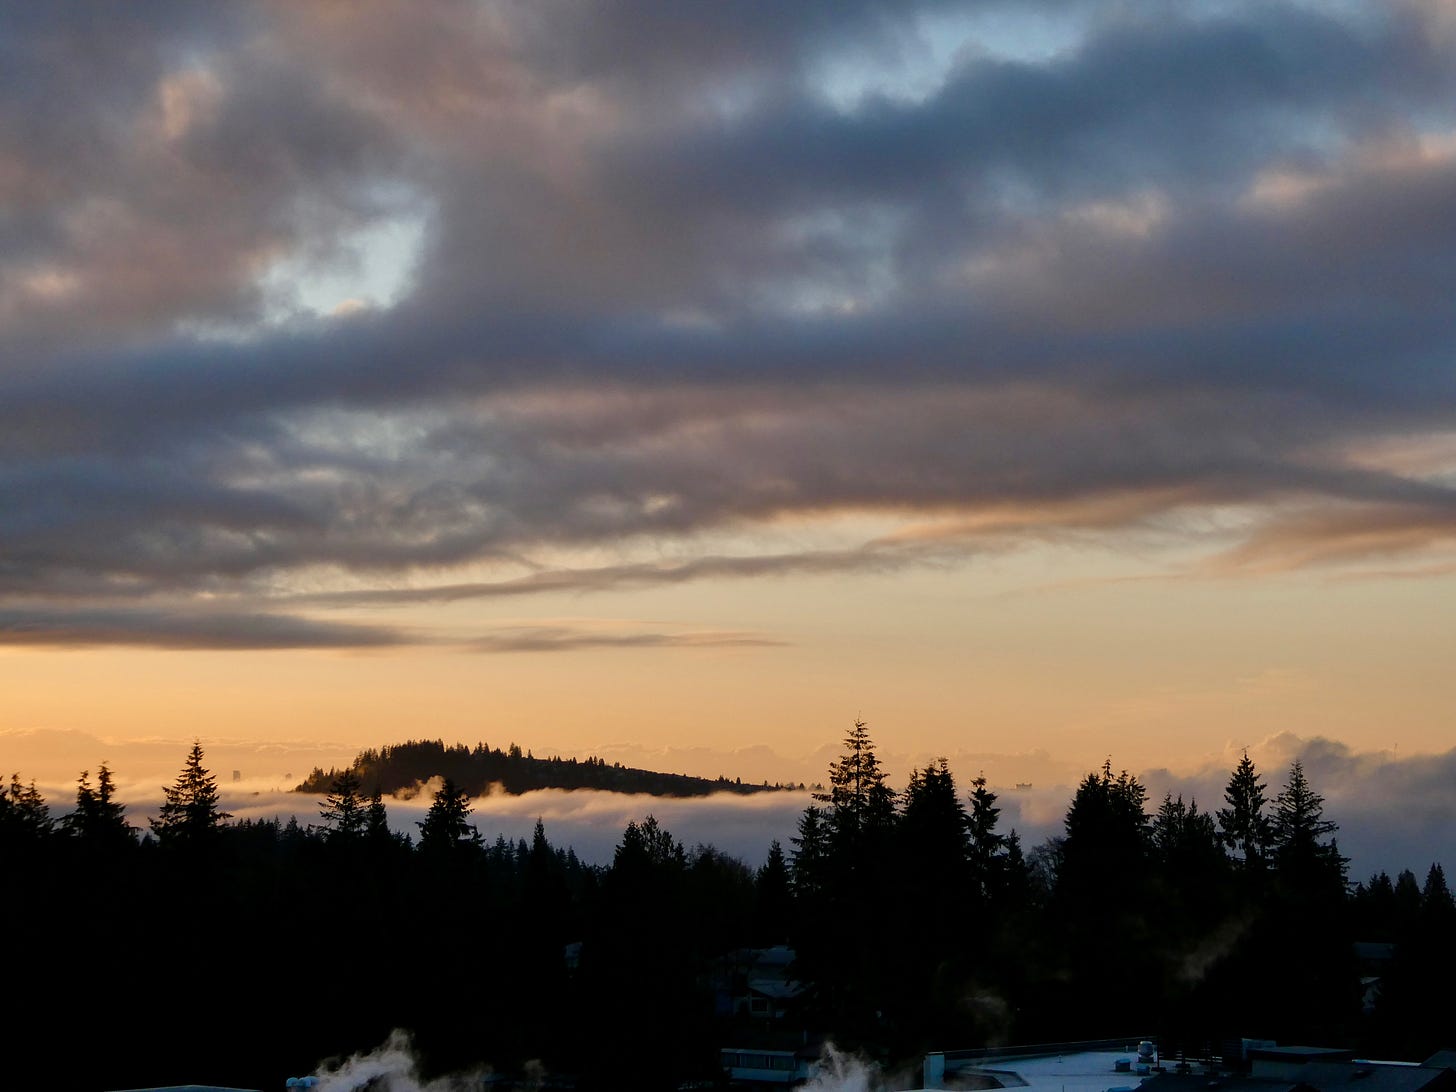 Sunrise over fir trees and mist